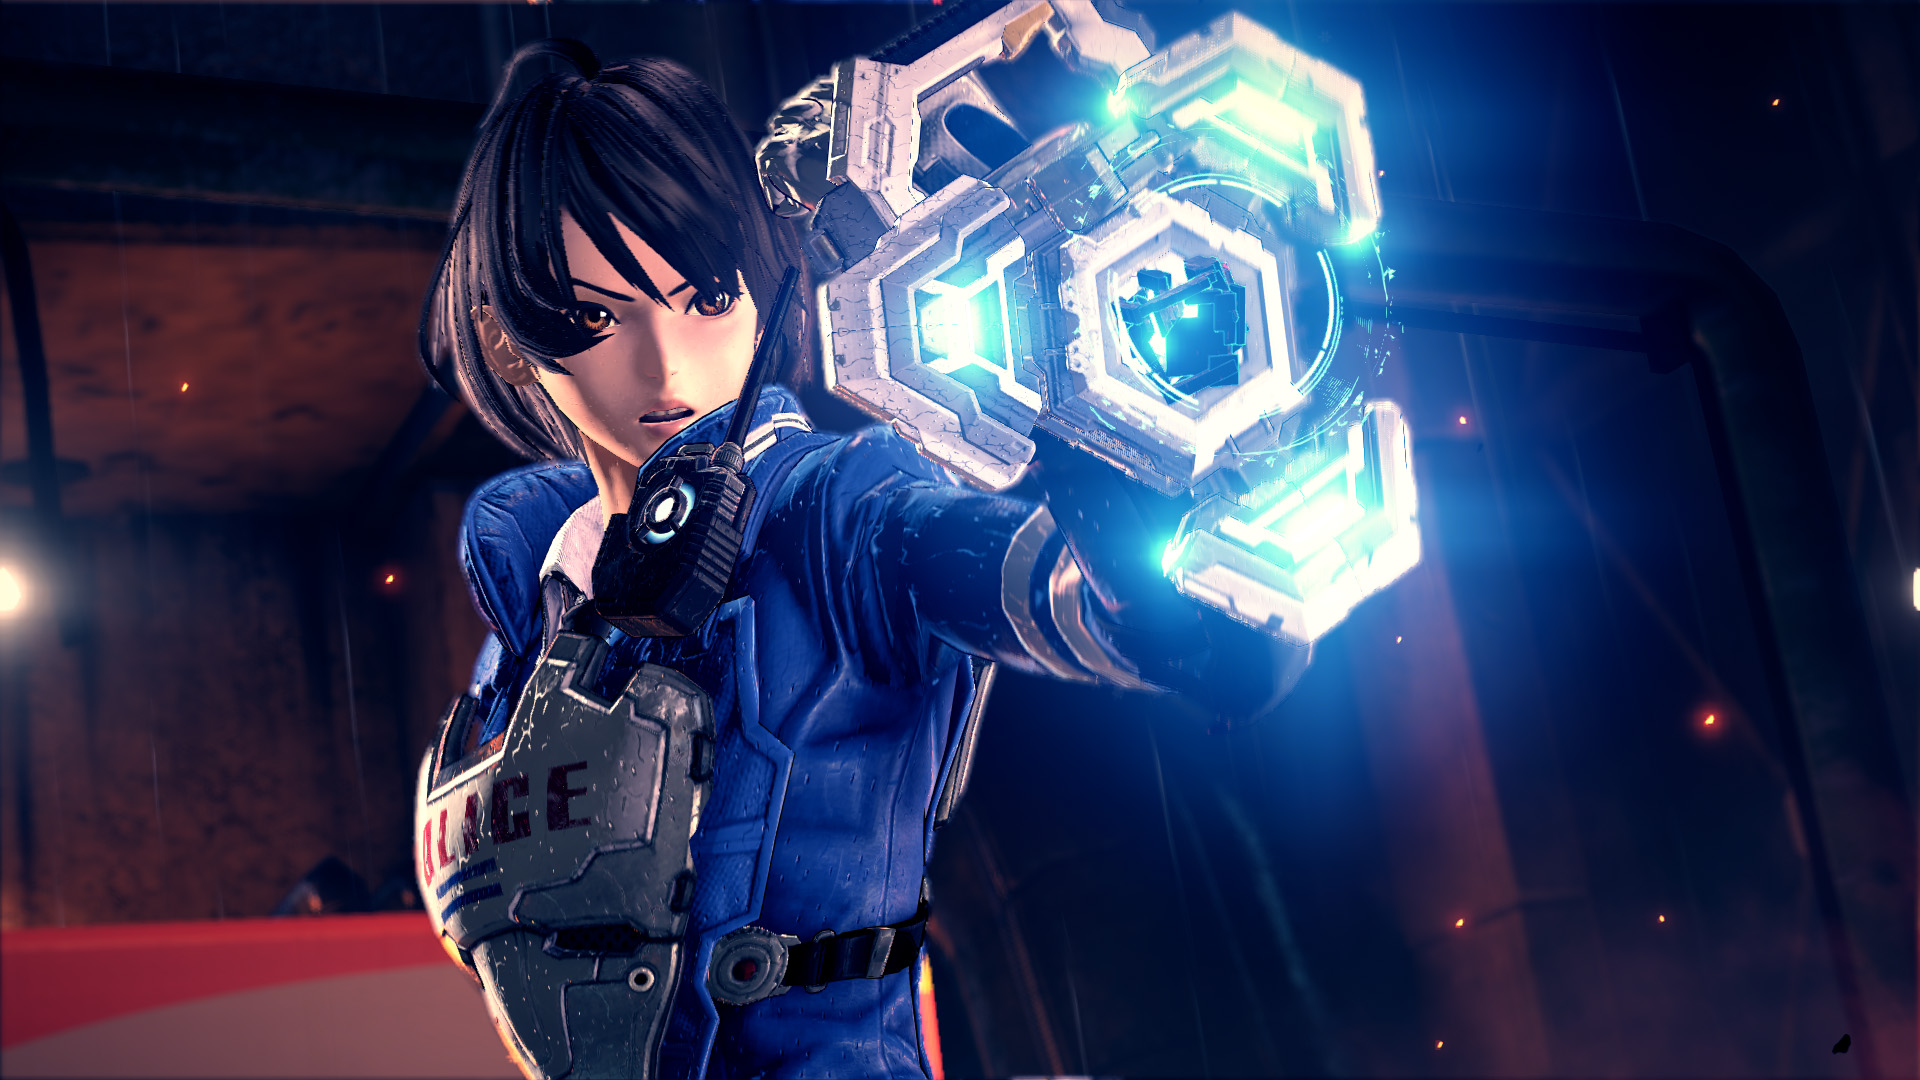 Astral Chain menunjukkan gameplay baru dan luas di Gamescom 2019